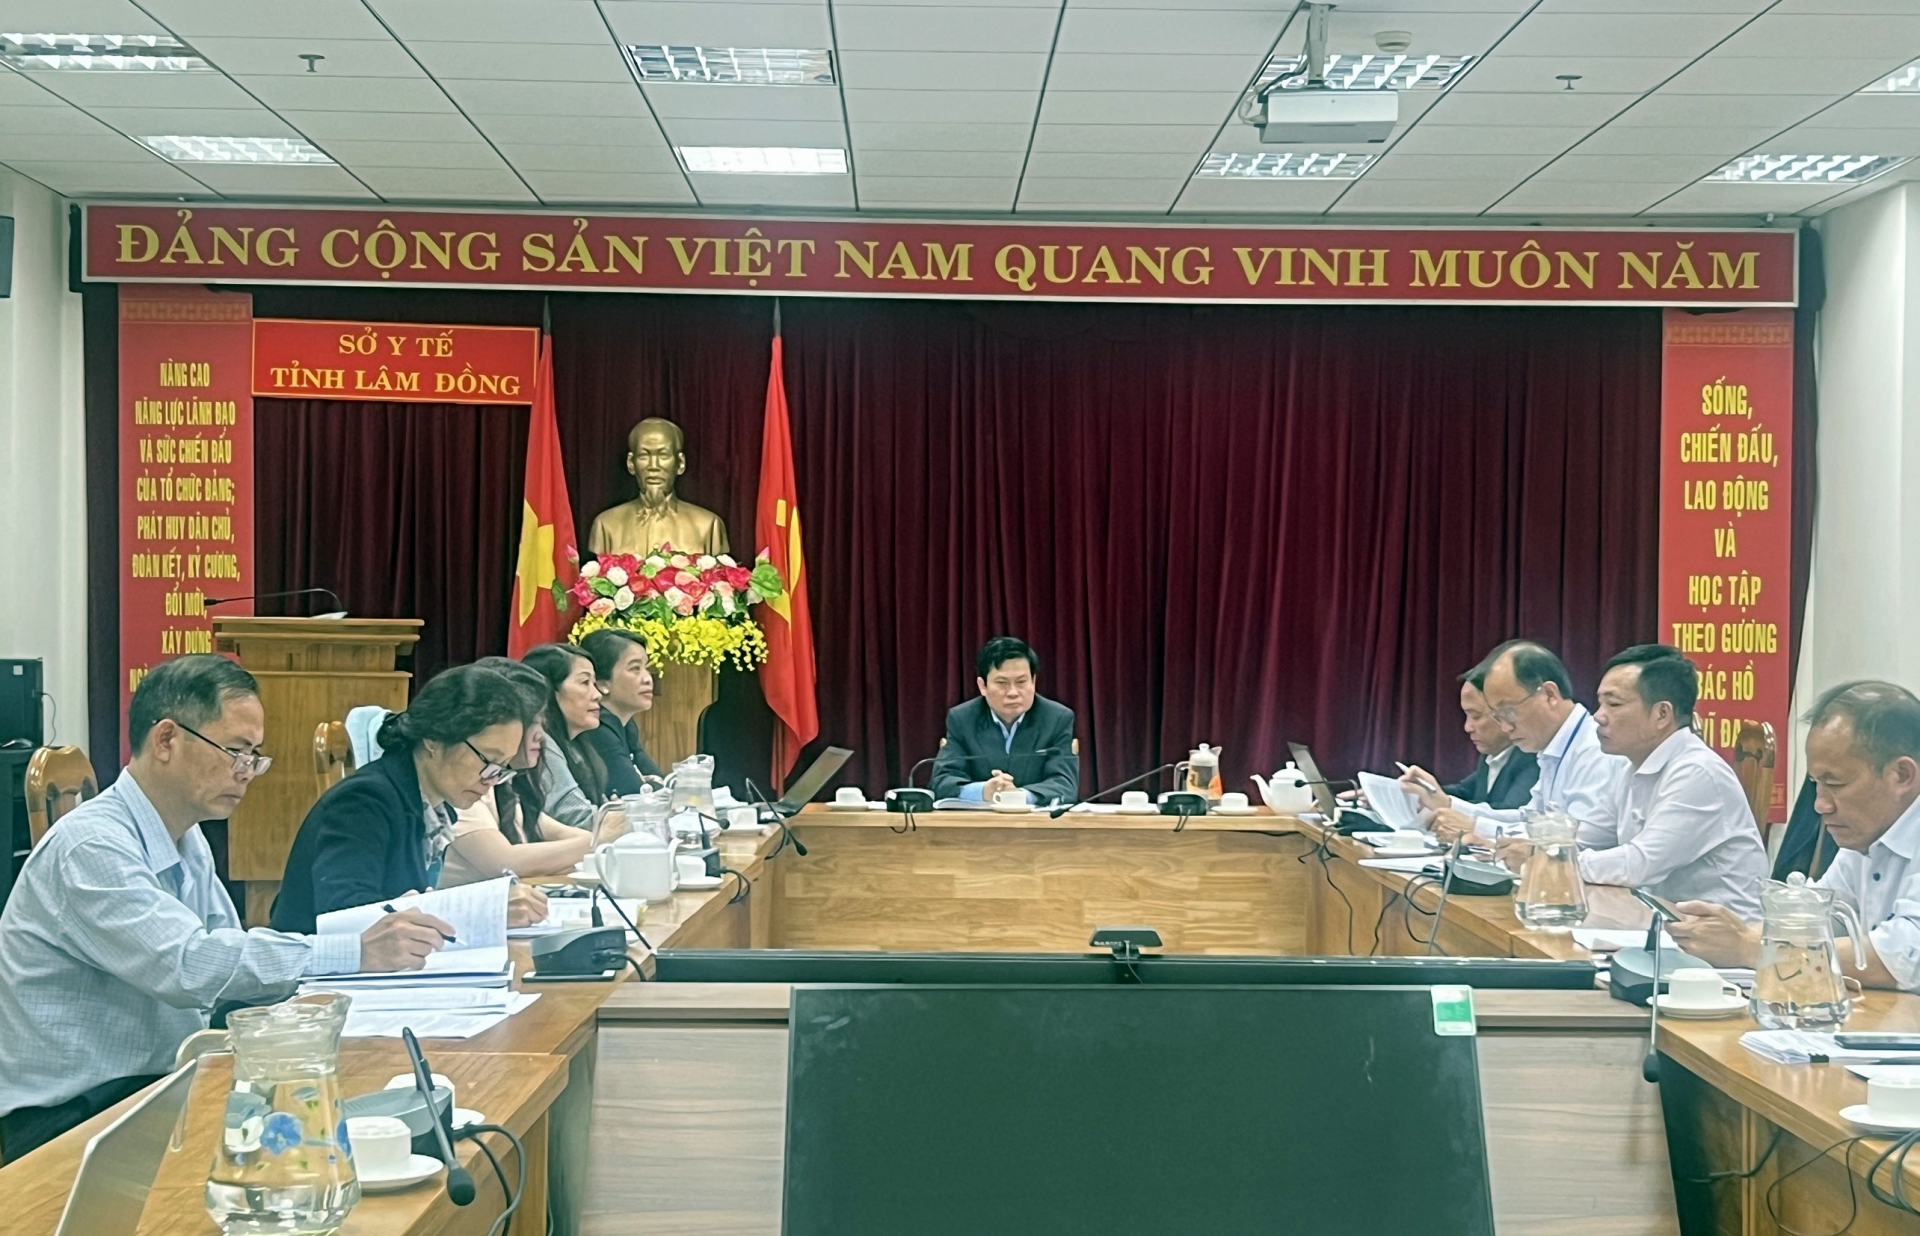 Ông Nguyễn Đức Thuận –Giám đốc Sở Y tế tỉnh Lâm Đồng chủ trì hội nghị tại đầu cầu Sở Y tế tỉnh